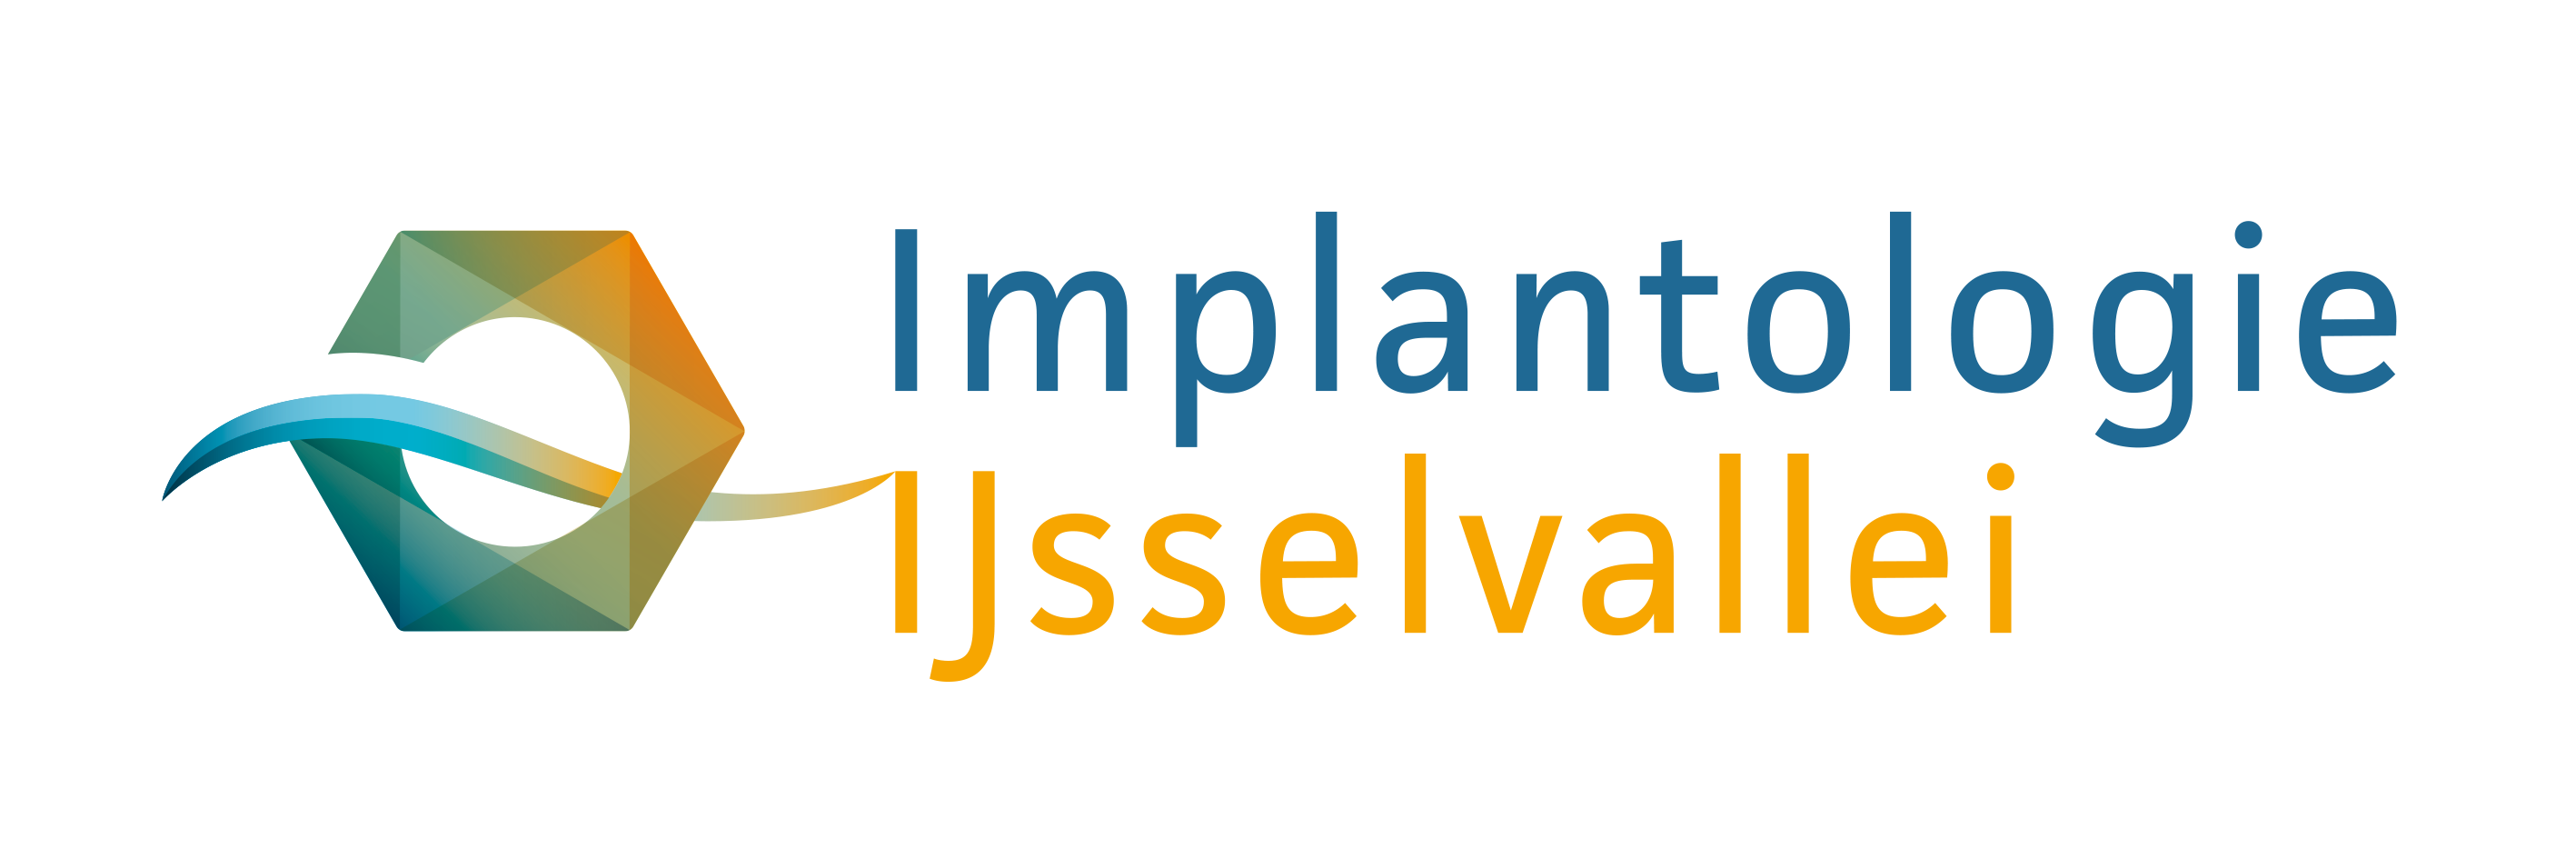 Implantologie IJsselvallei